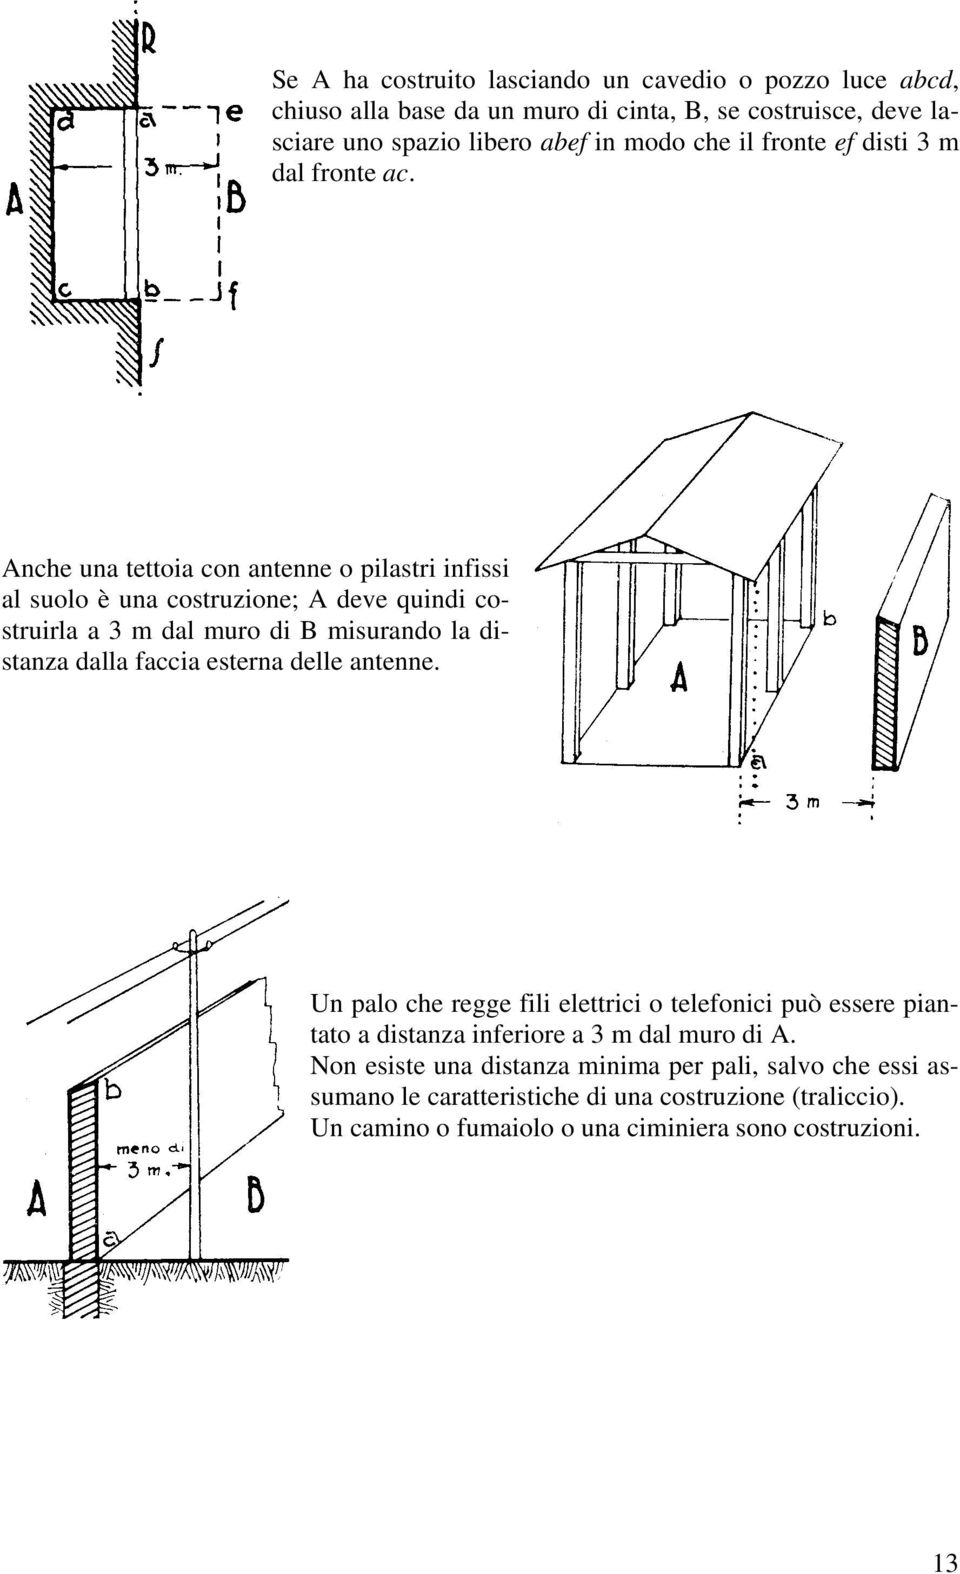 Anche una tettoia con antenne o pilastri infissi al suolo è una costruzione; A deve quindi costruirla a 3 m dal muro di B misurando la distanza dalla faccia esterna